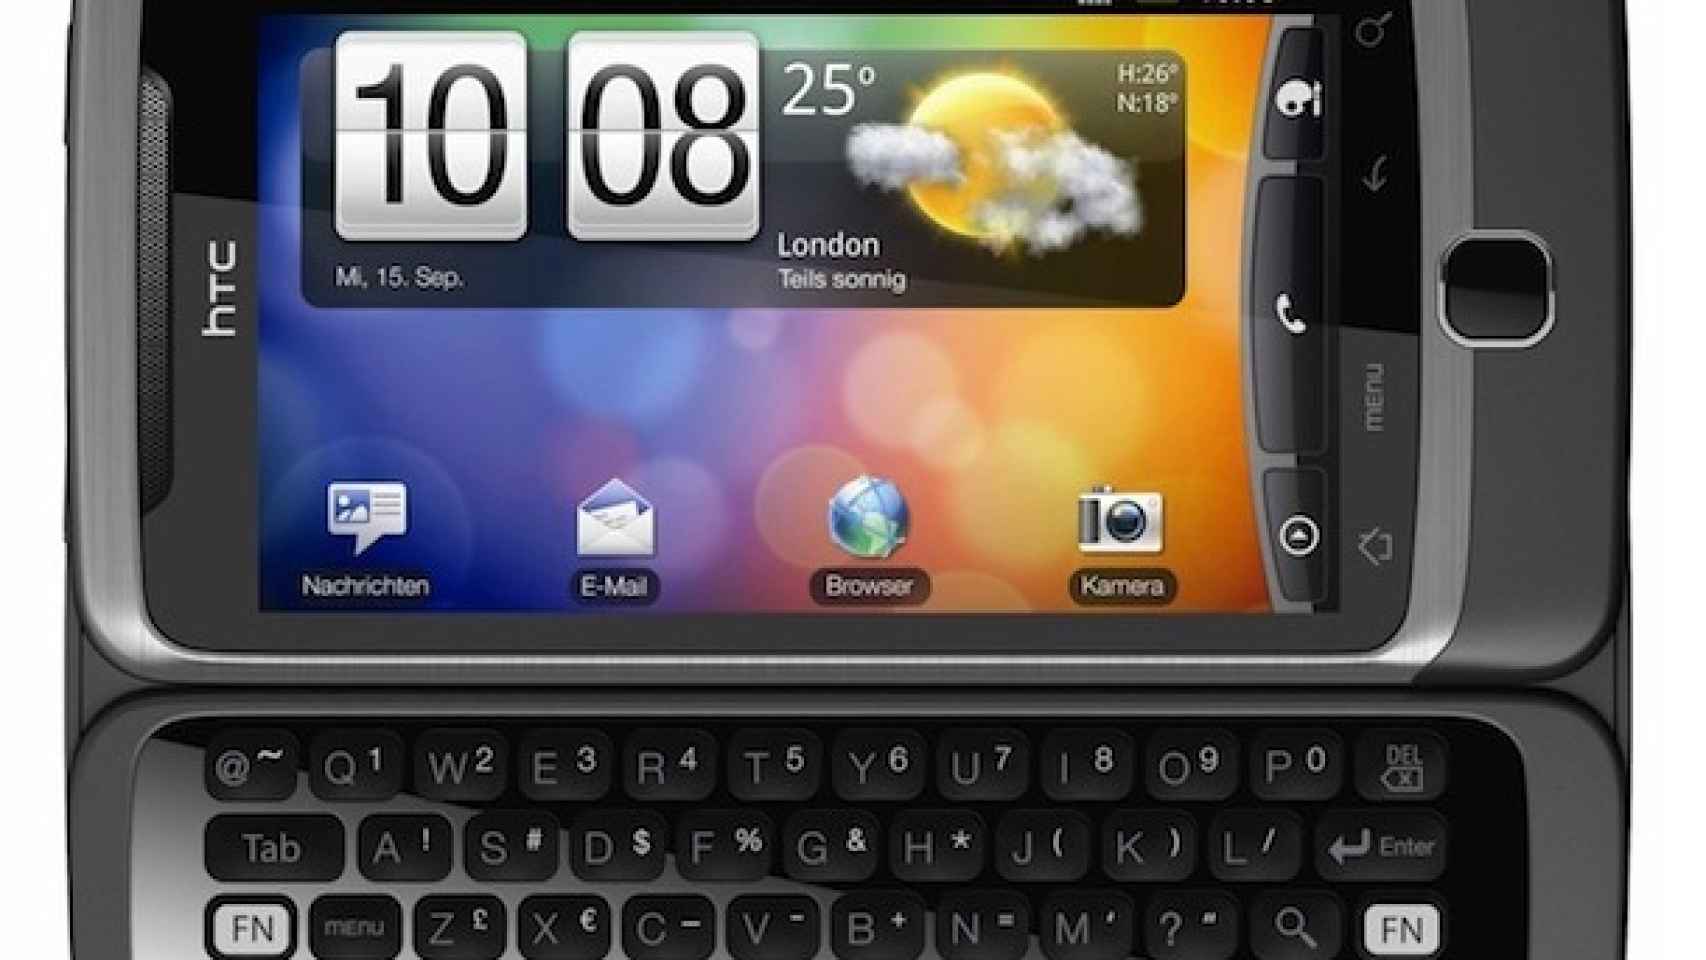 Precios del HTC Desire Z en Yoigo y del Motorola FlipOut